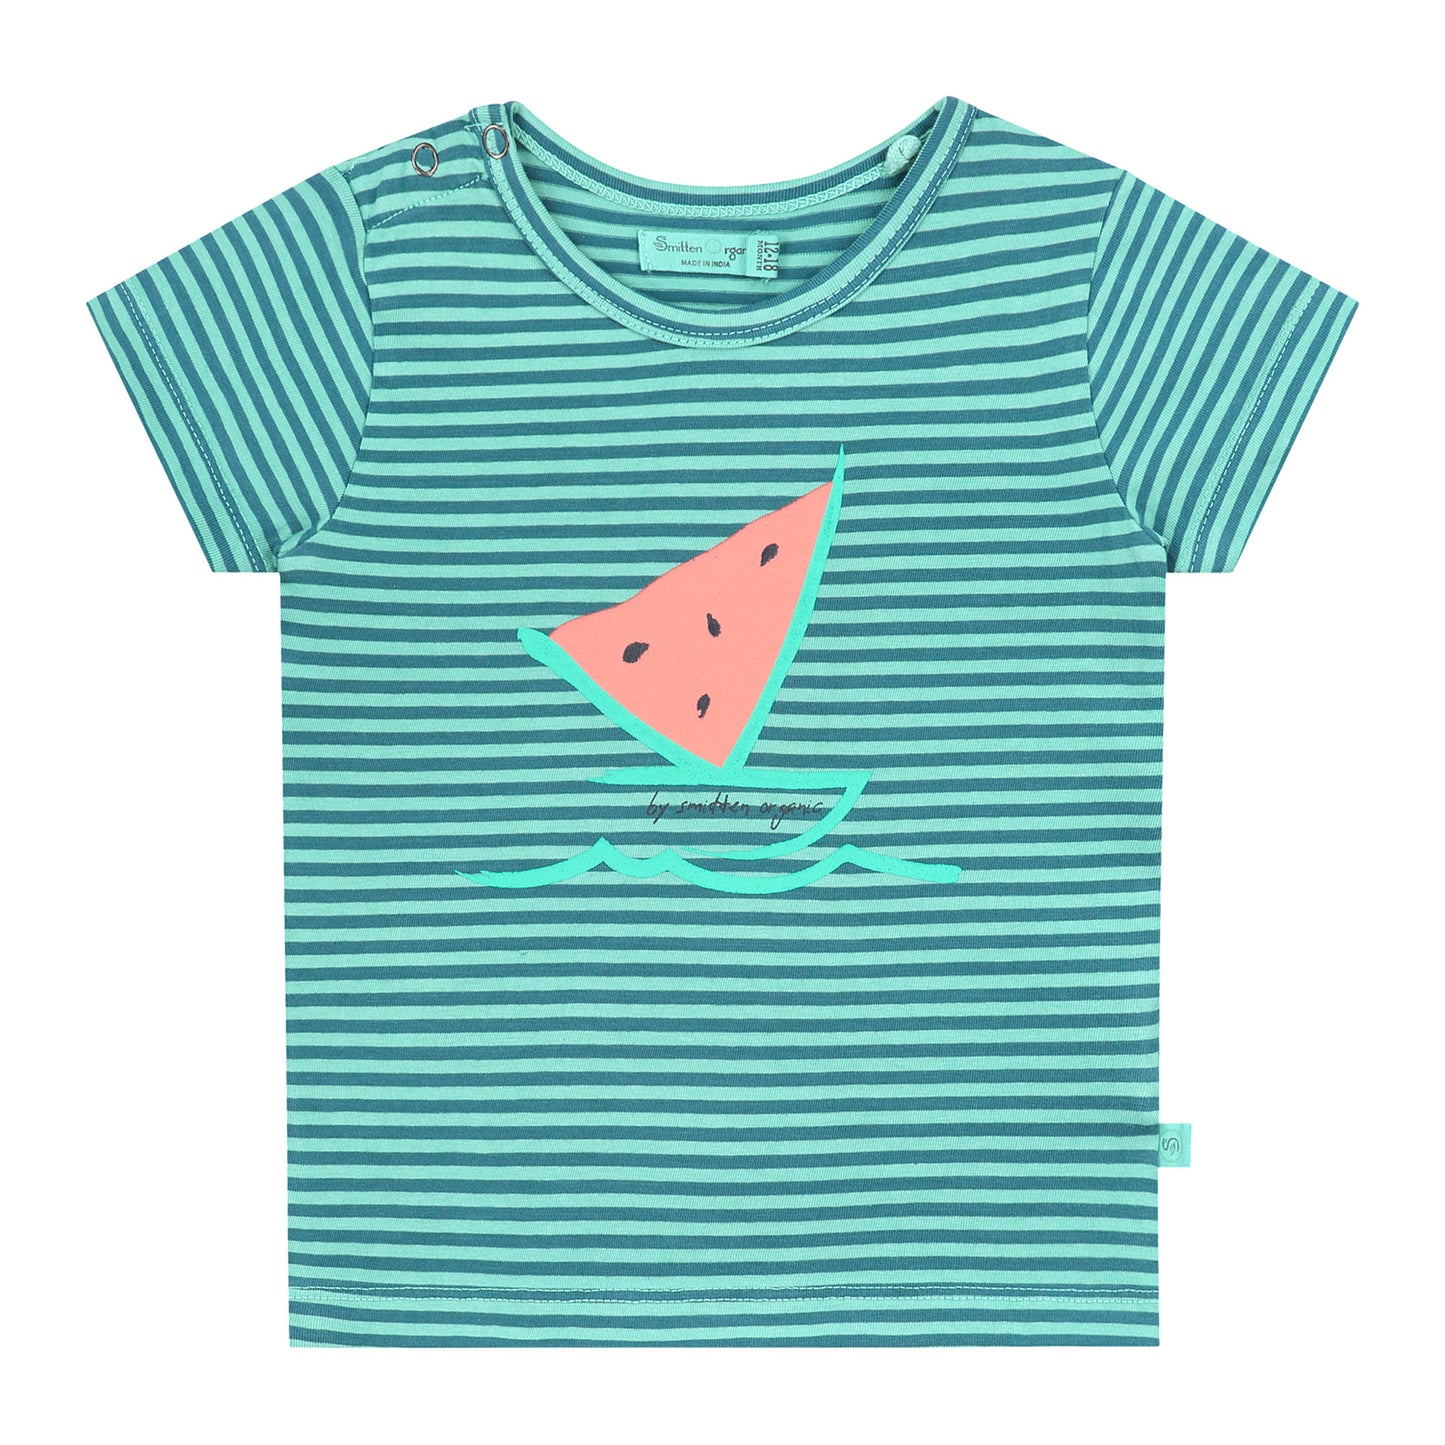 Gestreept T-shirt met watermeloenboot